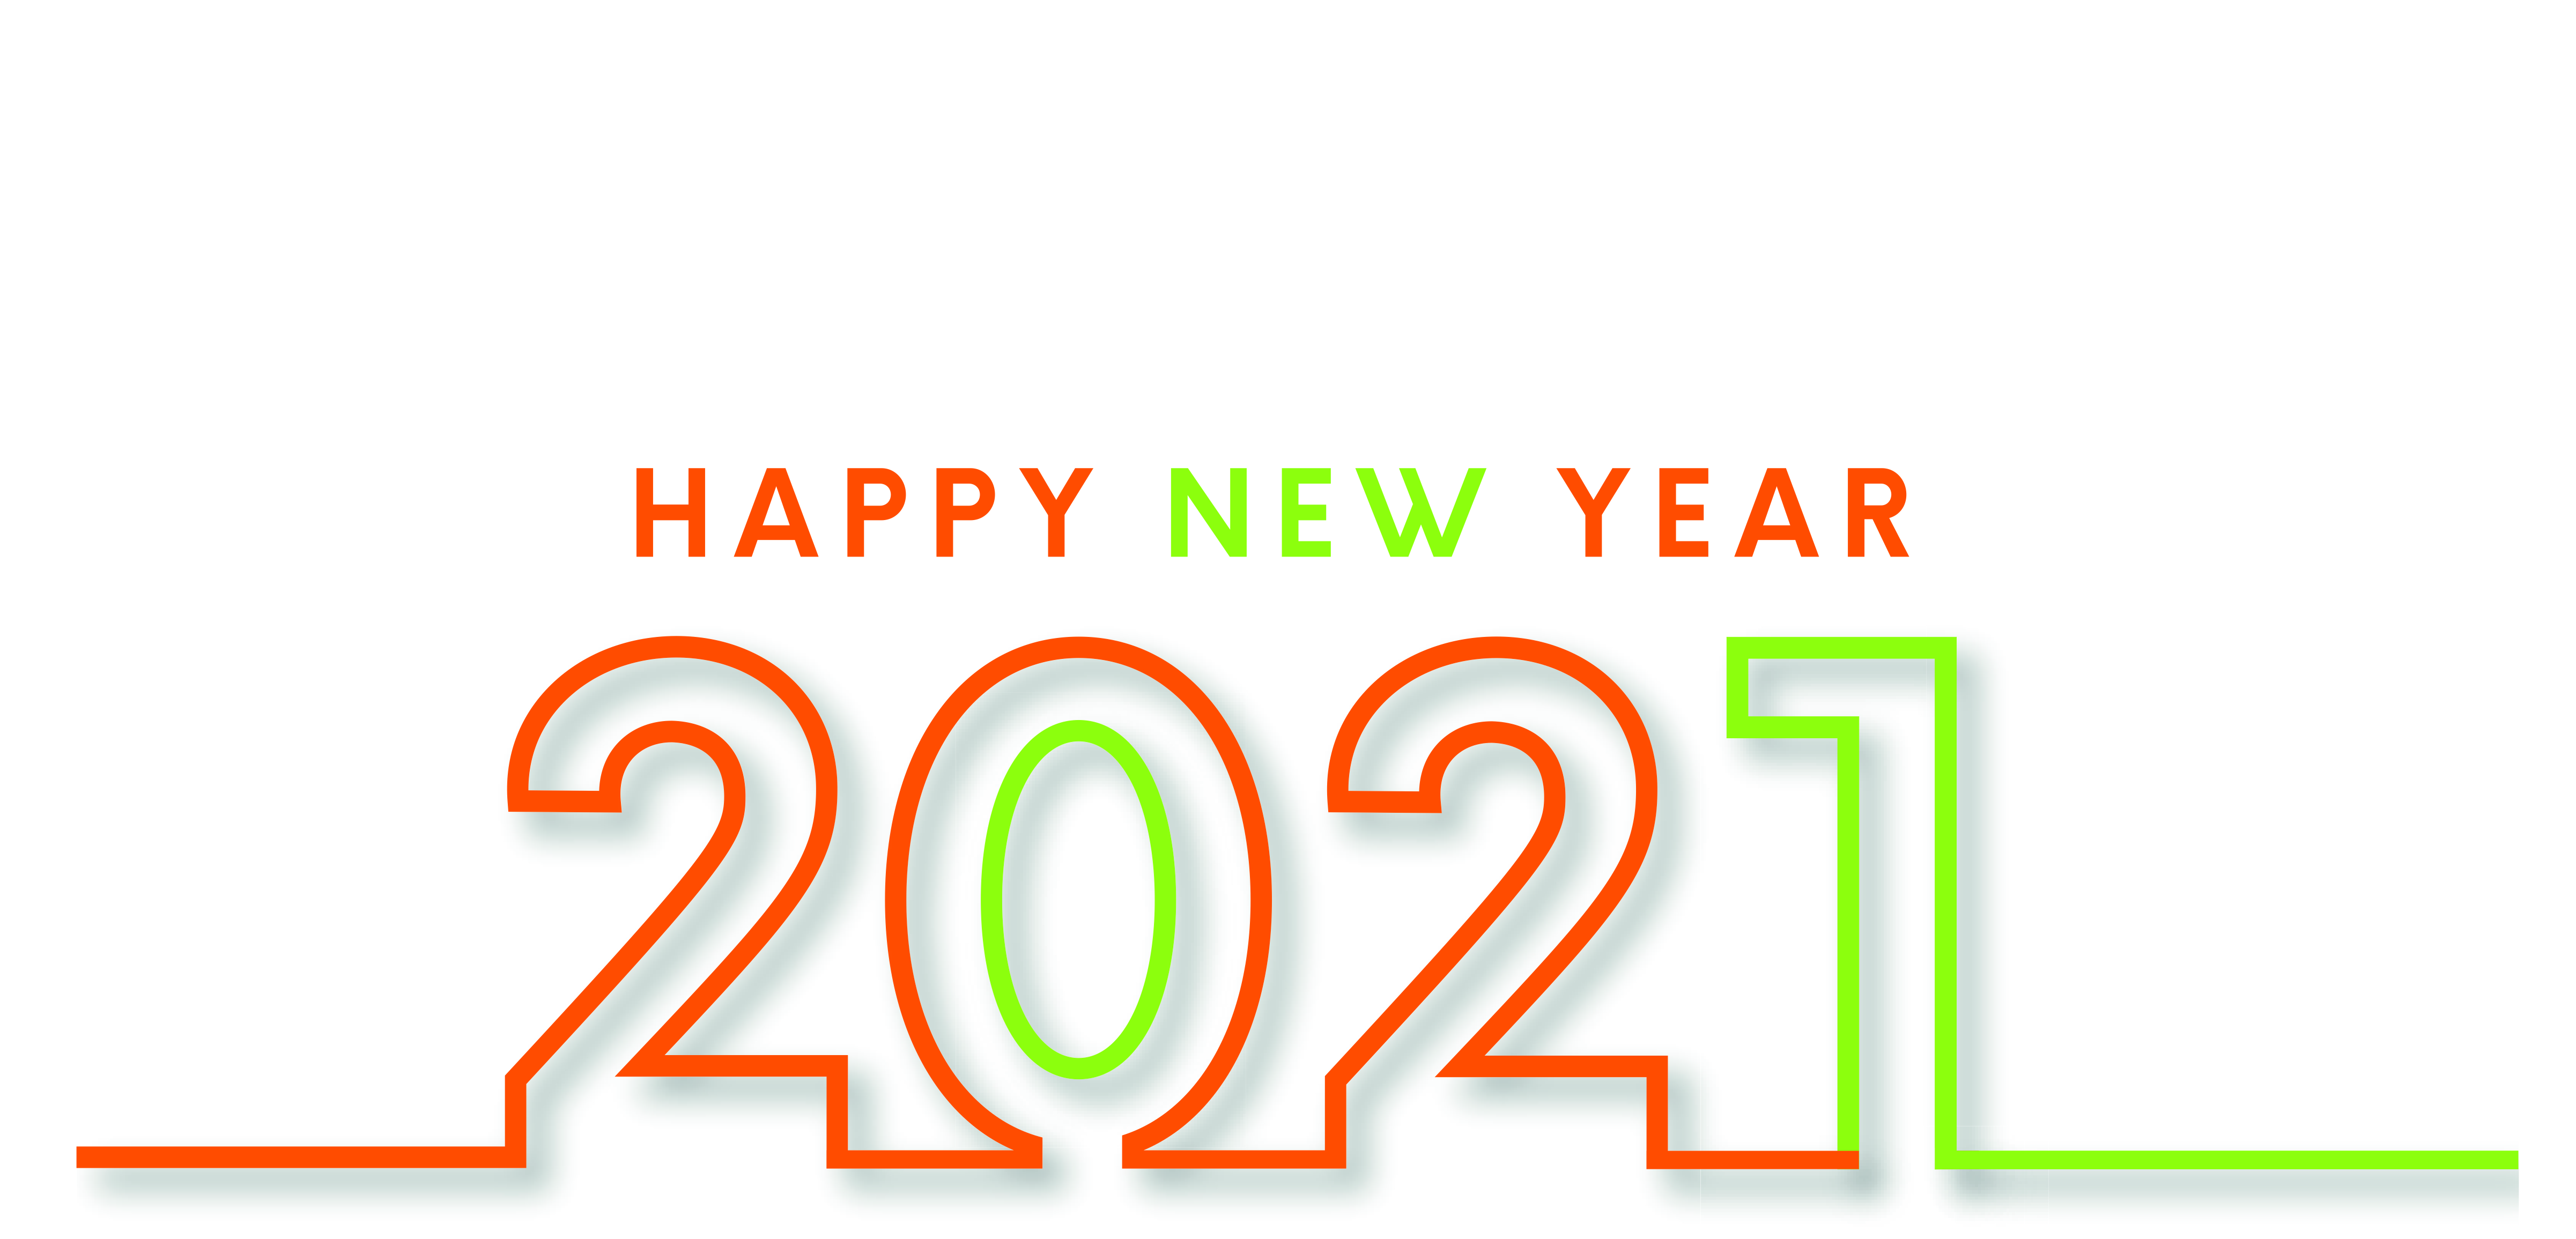 HAPPY NEW YEAR  HELLO 2021!